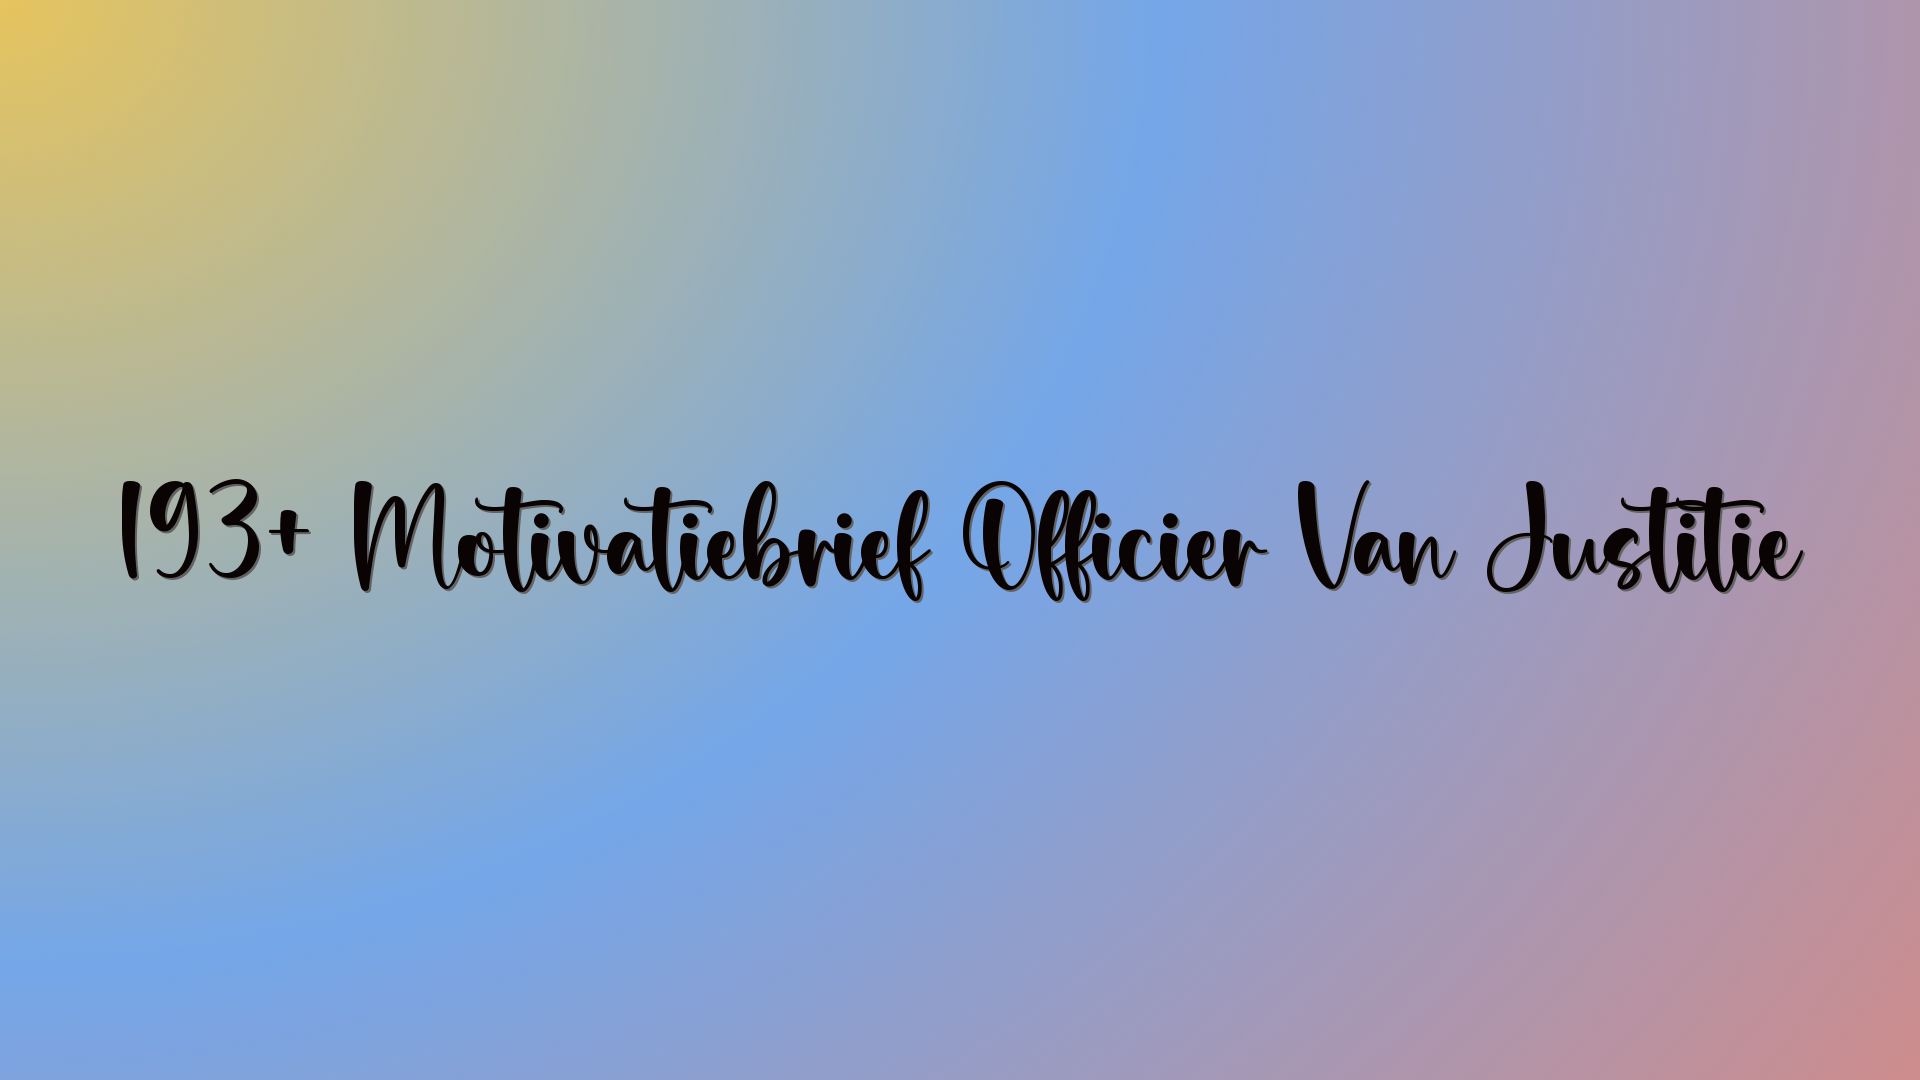 193+ Motivatiebrief Officier Van Justitie